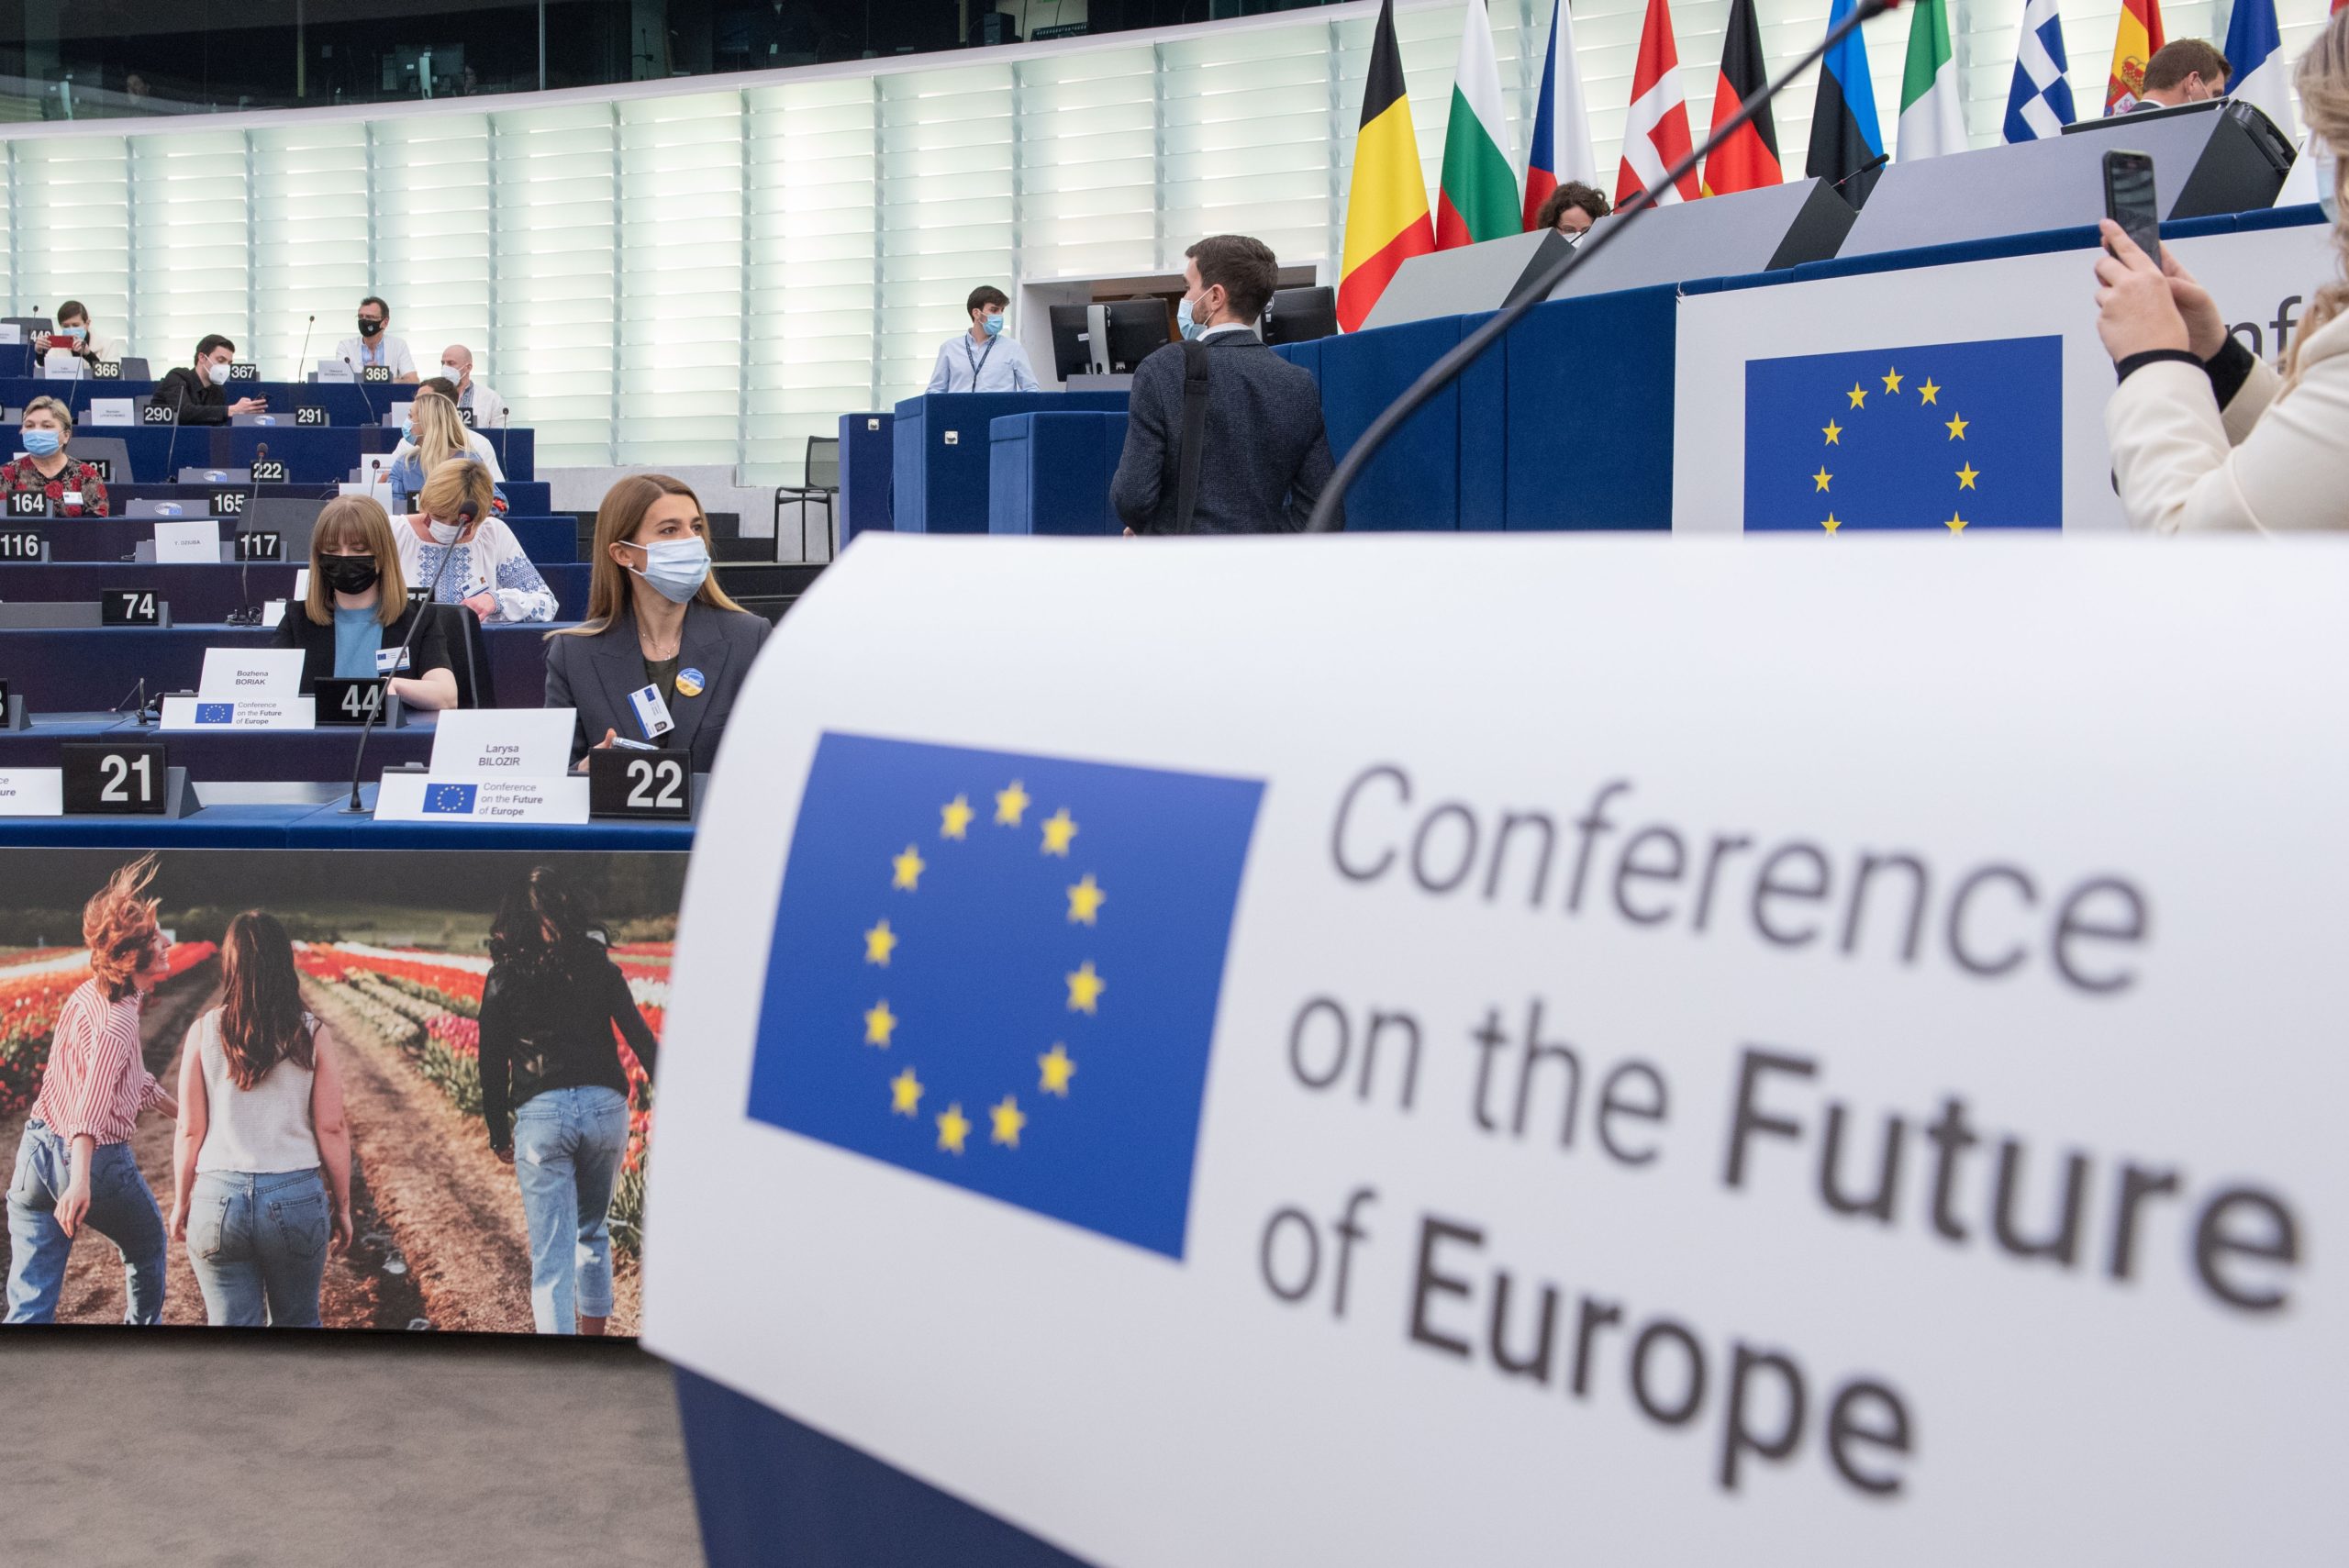 Διάσκεψη για το μέλλον της Ευρώπης – Ο λόγος στους πολίτες: Ενιαία οικονομική αμυντική ενεργειακή επενδυτική αναπτυξιακή πολιτική για τα κράτη μέλη